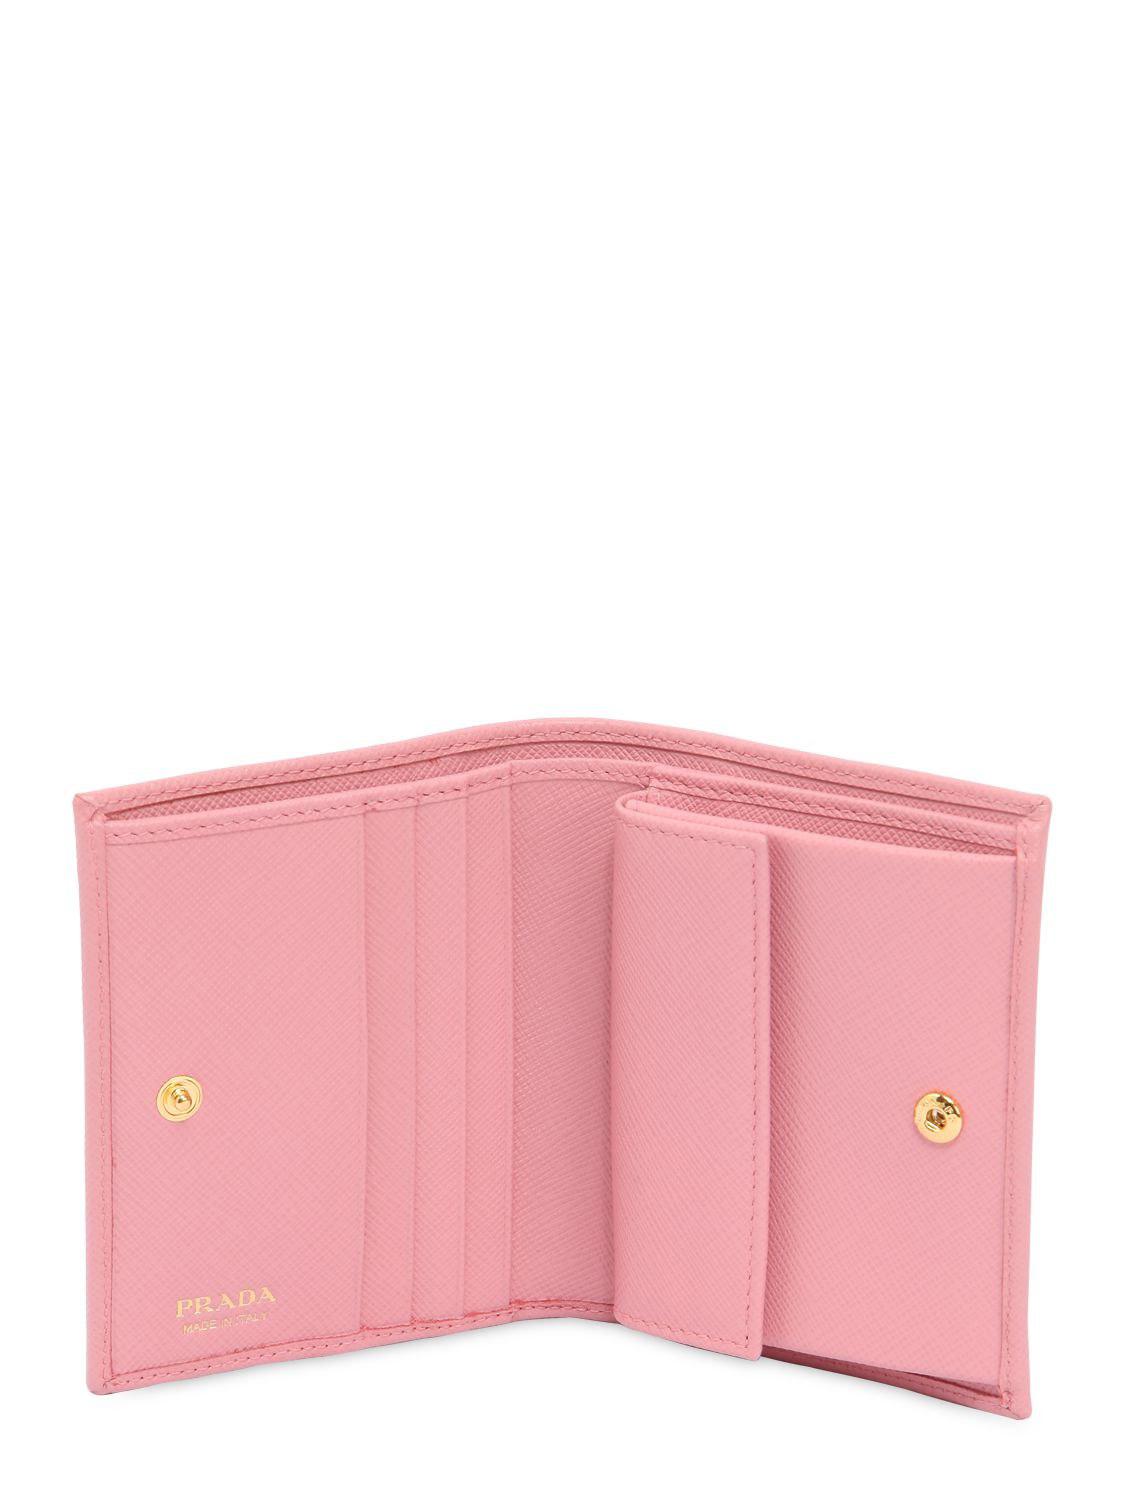 prada pink wallet